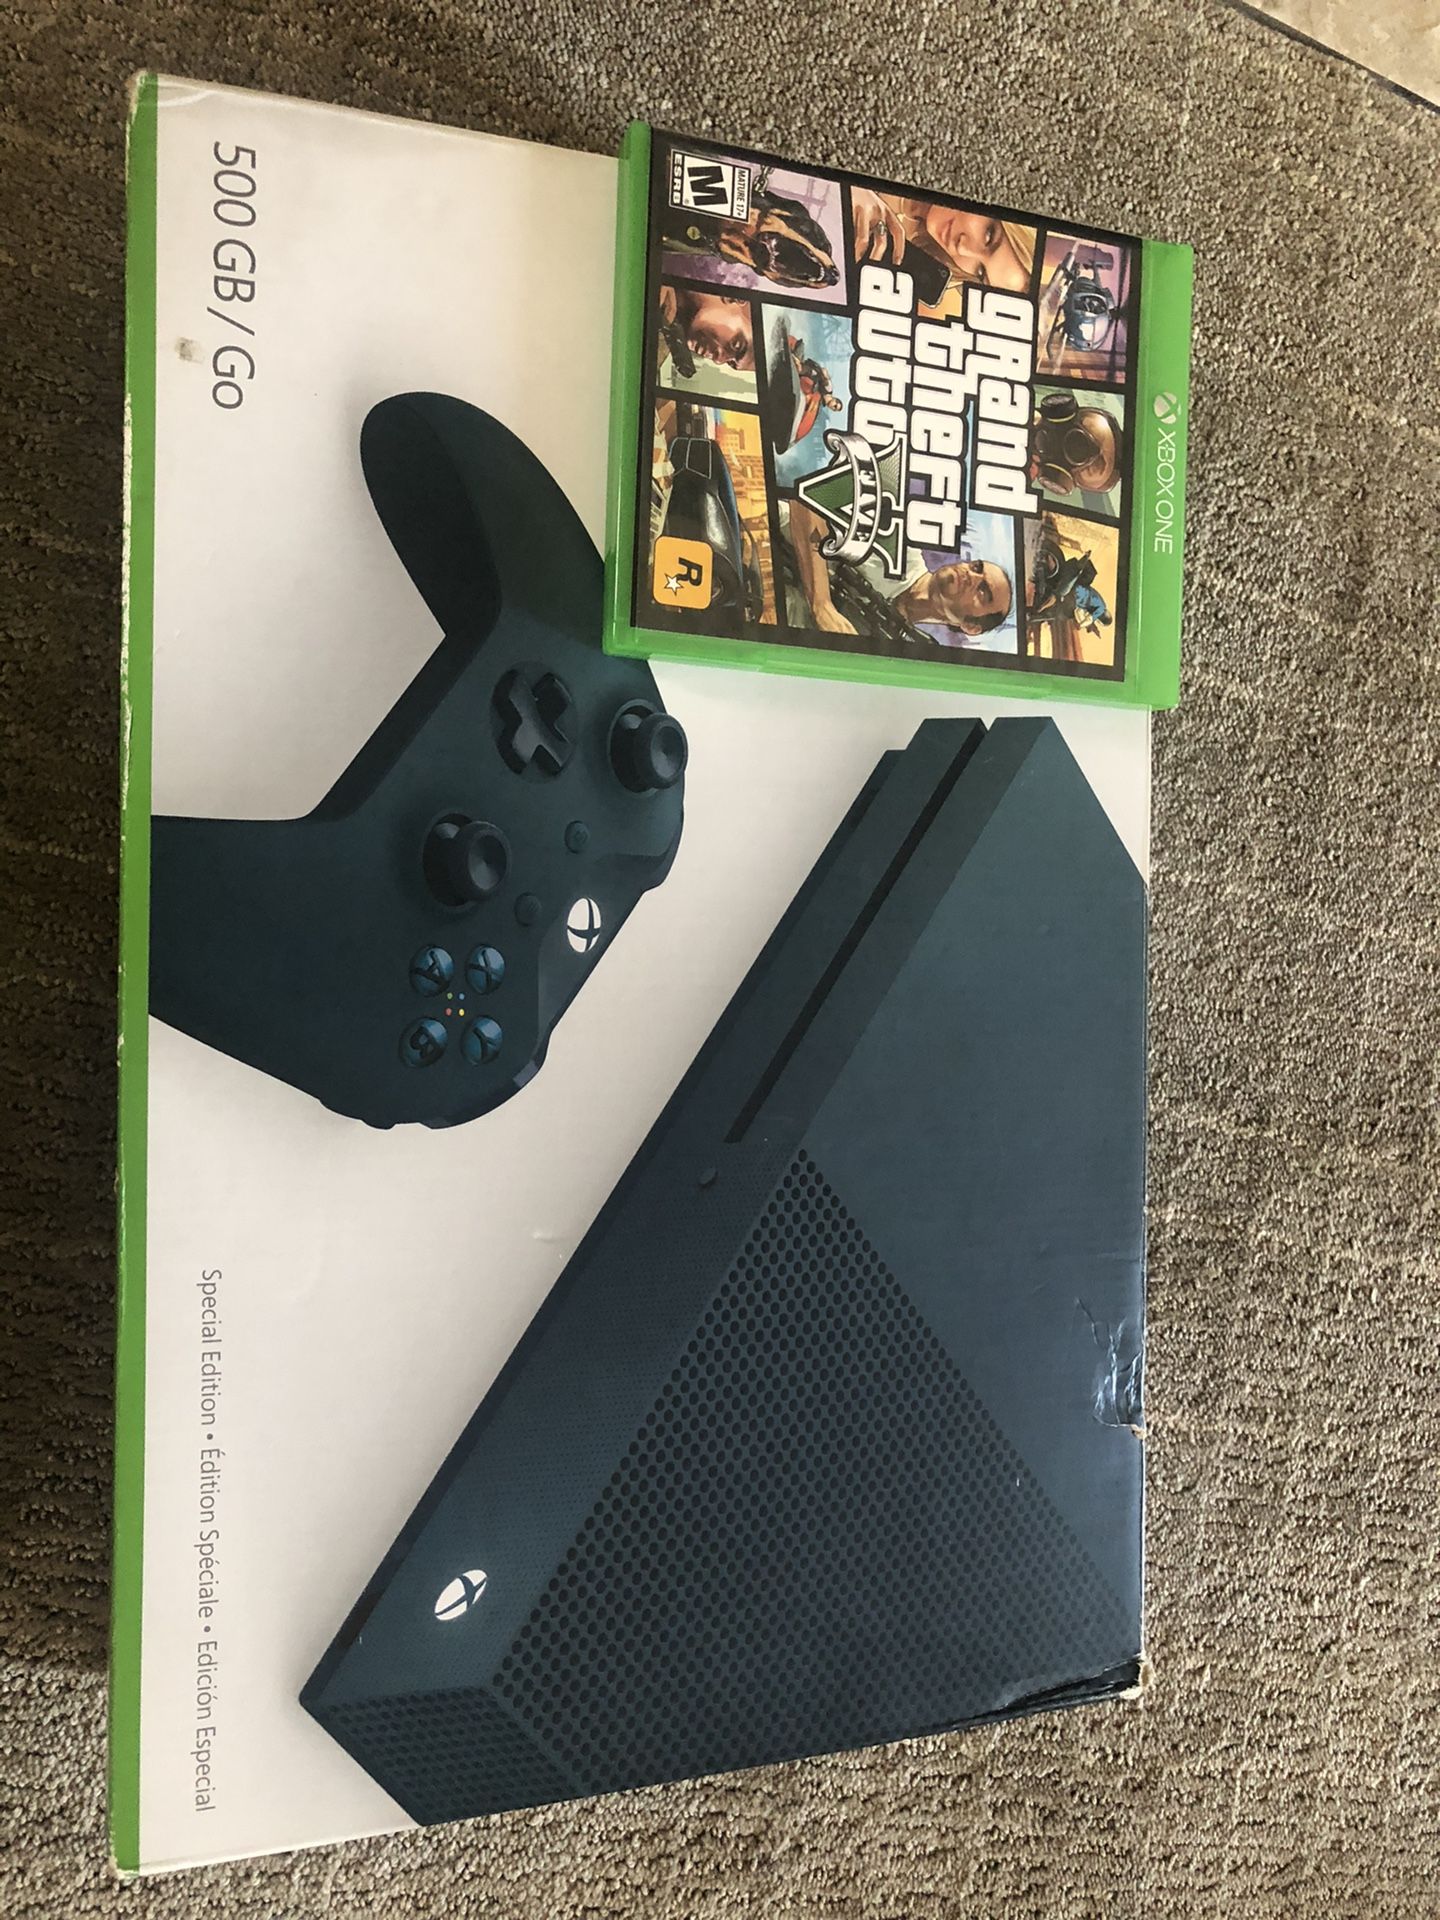 Xbox One w/ GTA V Bundle